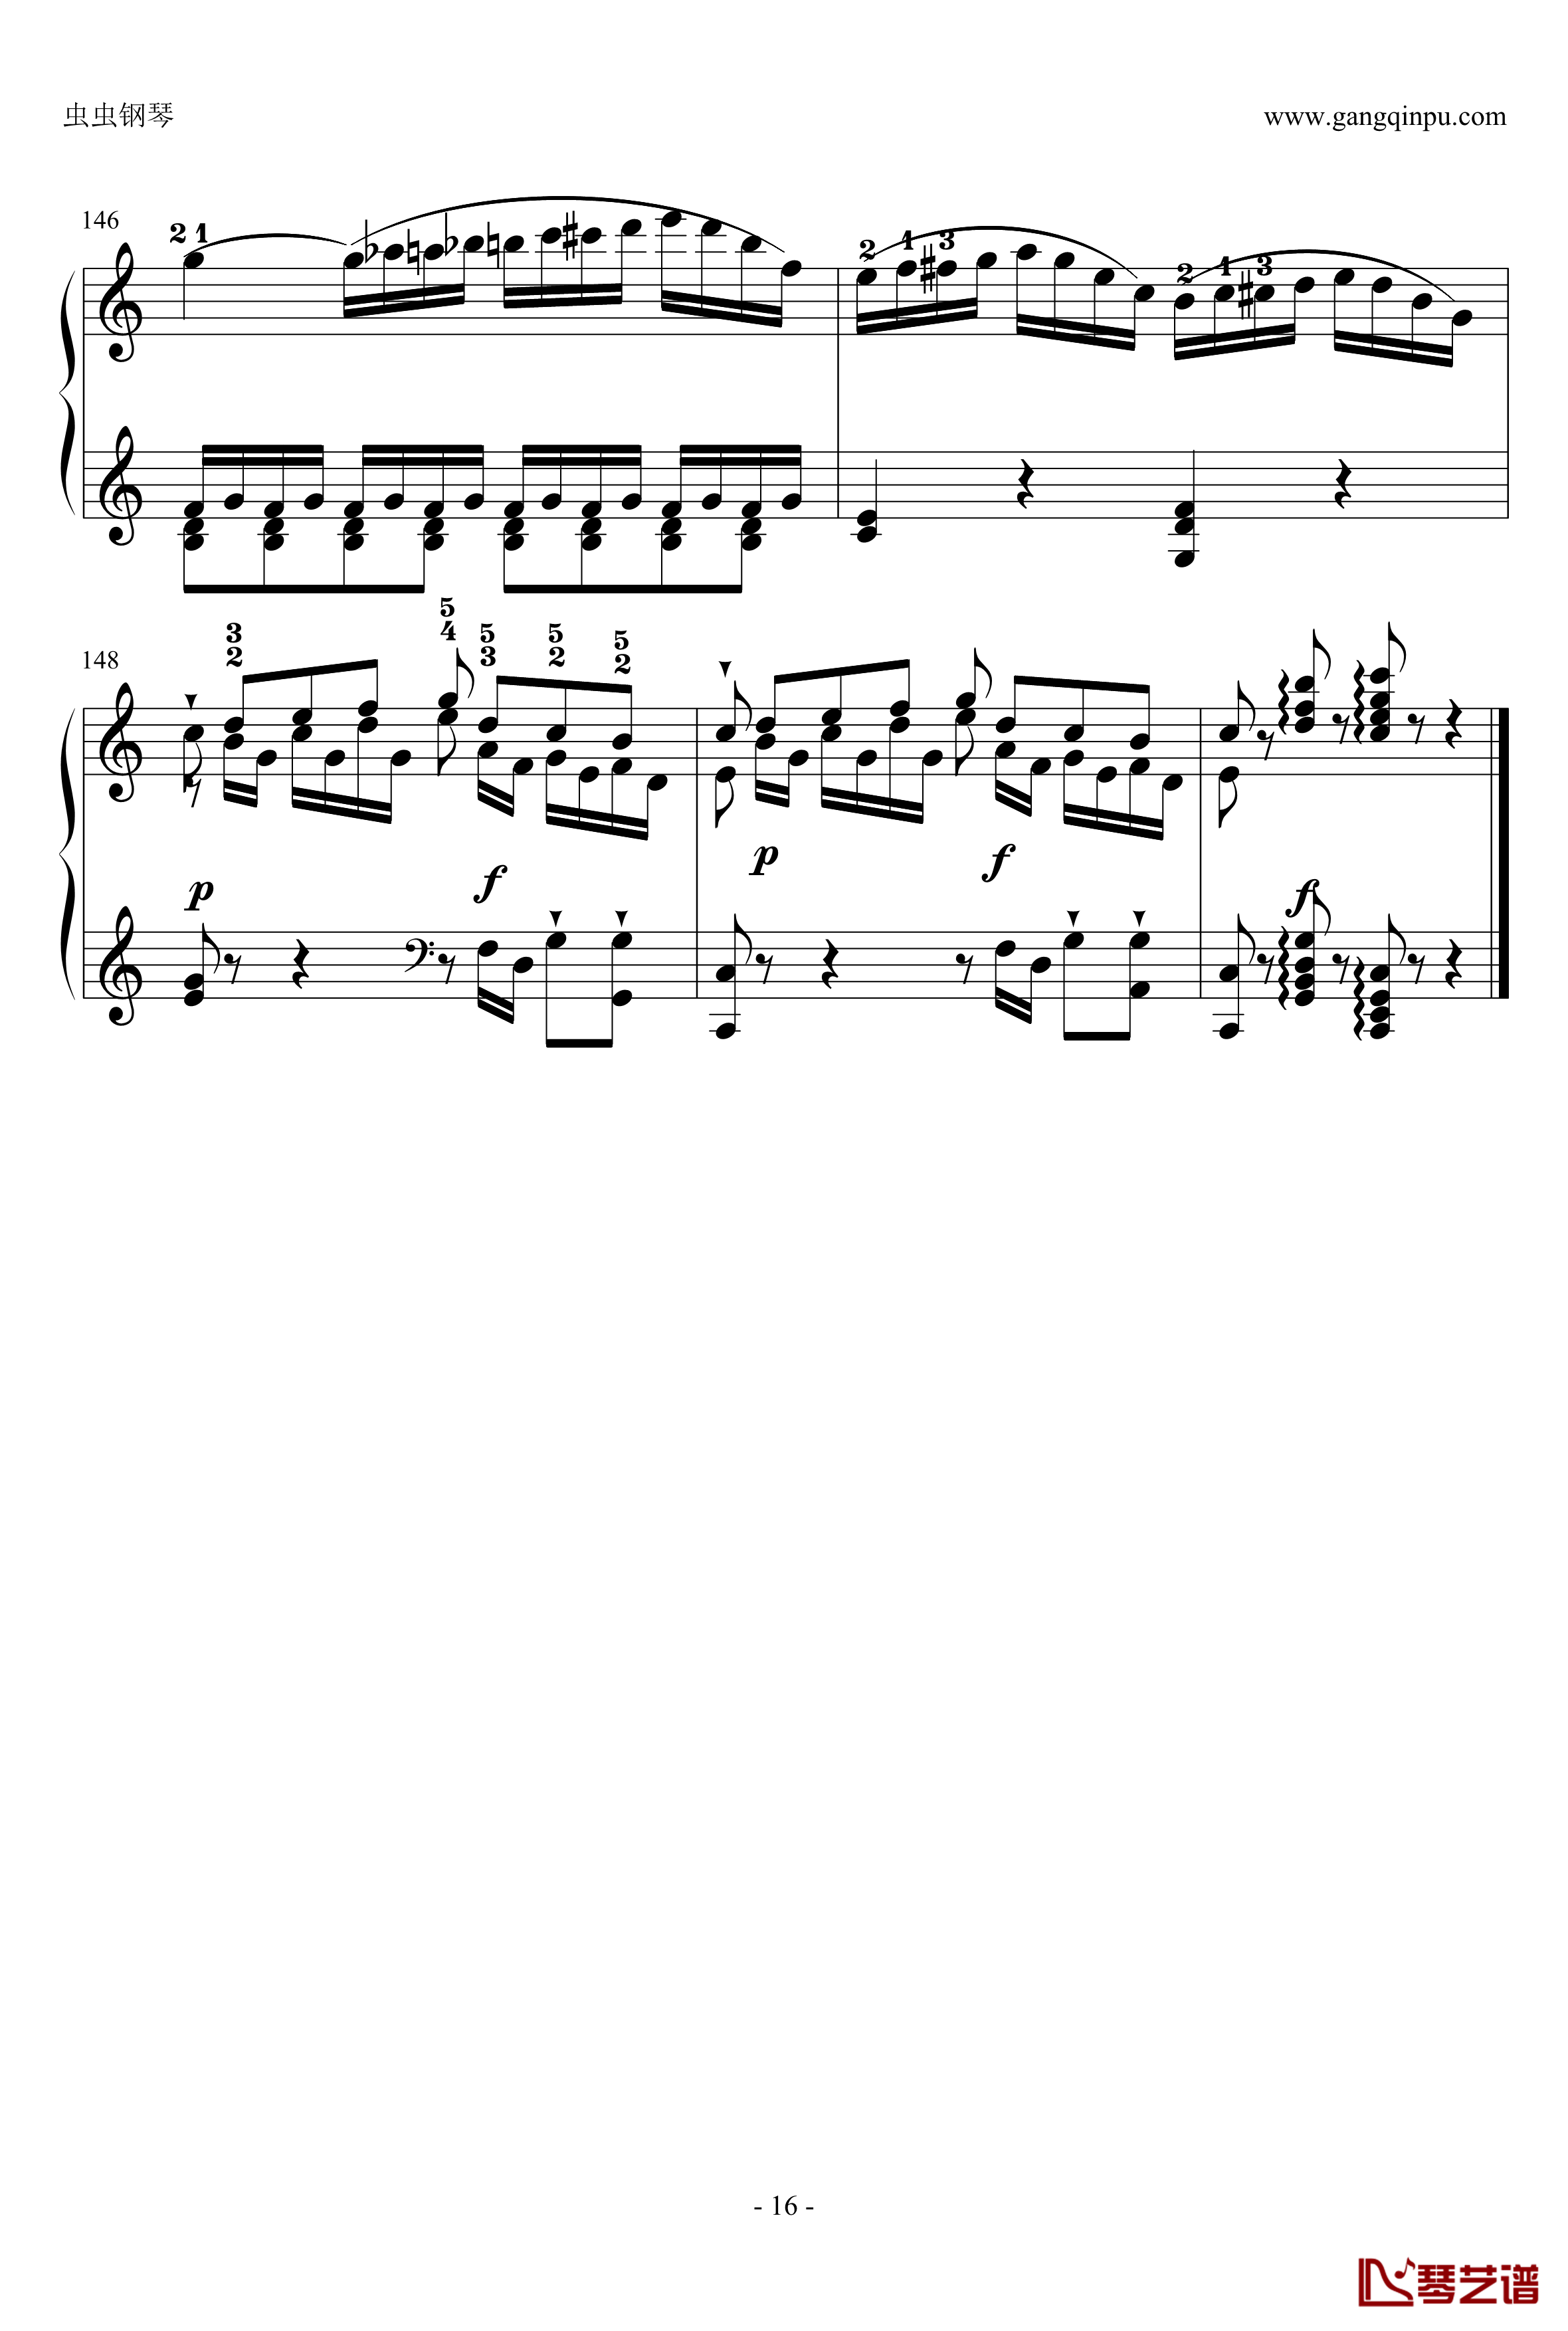 C大调奏鸣曲钢琴谱第一乐章-海顿16